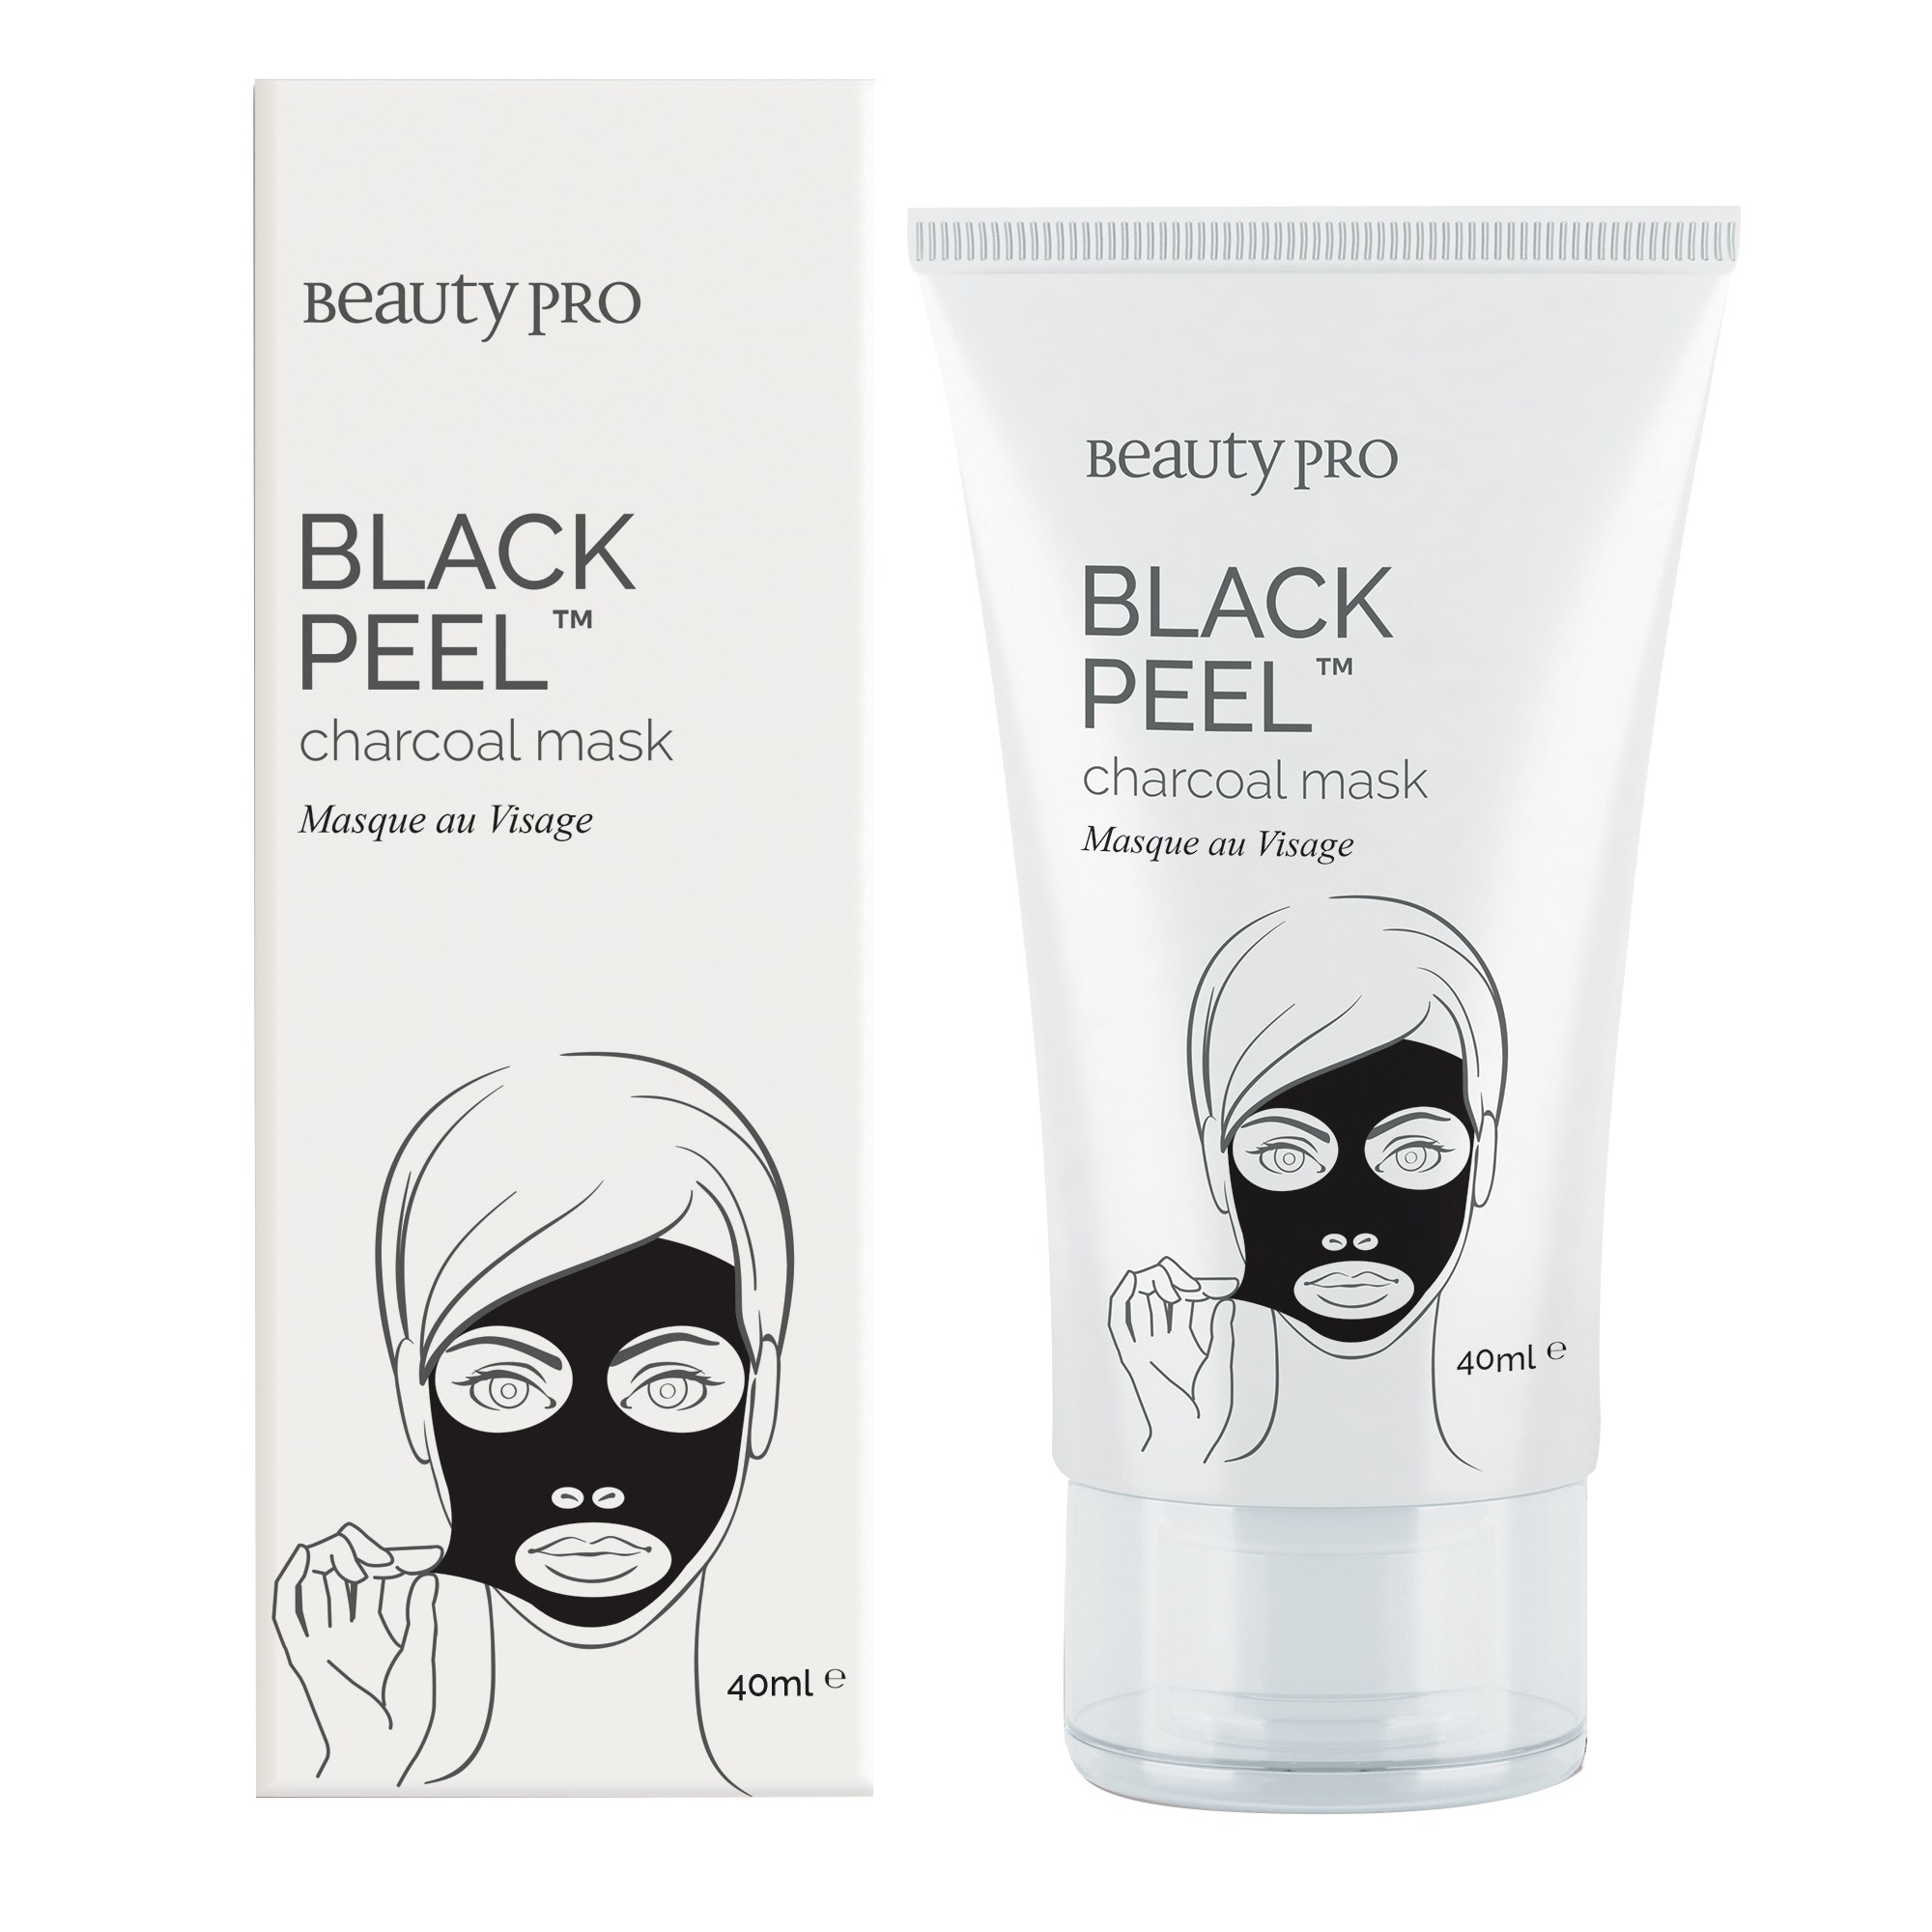 Beauty PRO Black Peel Charcoal Mask